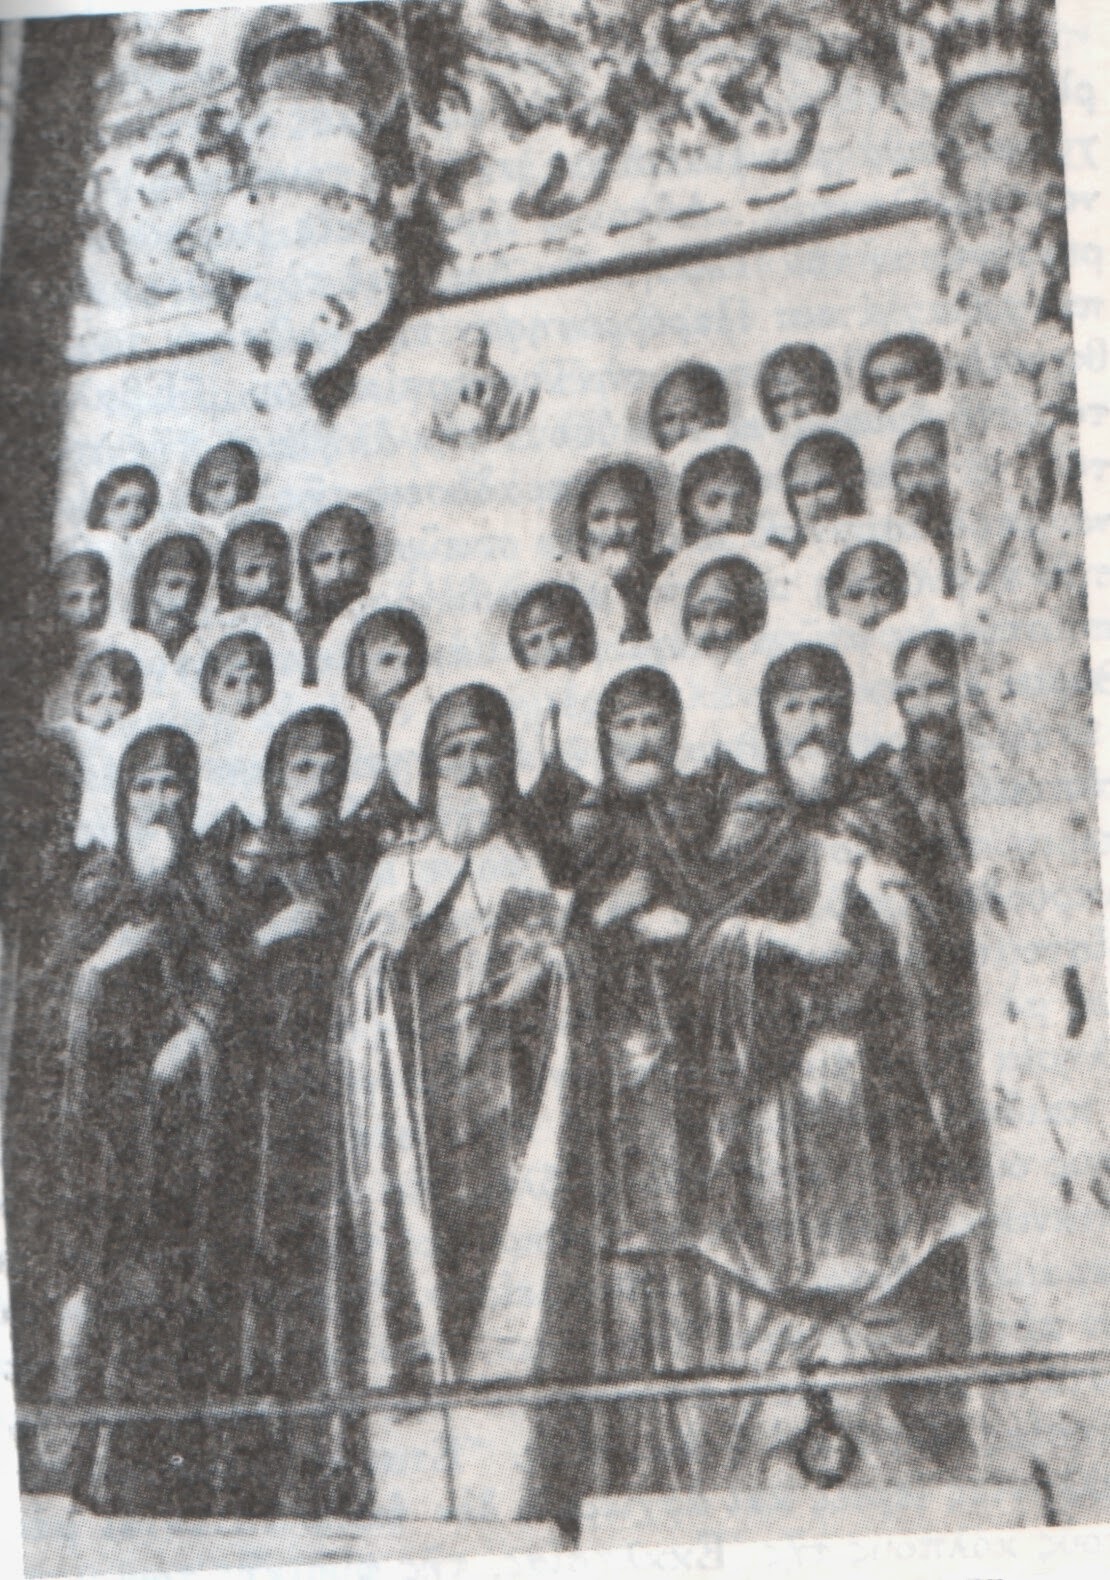 26 Aγιορείτες μάρτυρες ανθενωτικοί μοναχοί της Ιεράς Μονής Ζωγράφου - κατεκάησαν ζωντανοί στον πύργο της Μονής την 10η Οκτωβρίου 1276, υπό  των λατινοφρόνων Μιχαήλ Η΄ Παλαιολόγου και Ιωάννη Βέκκου,